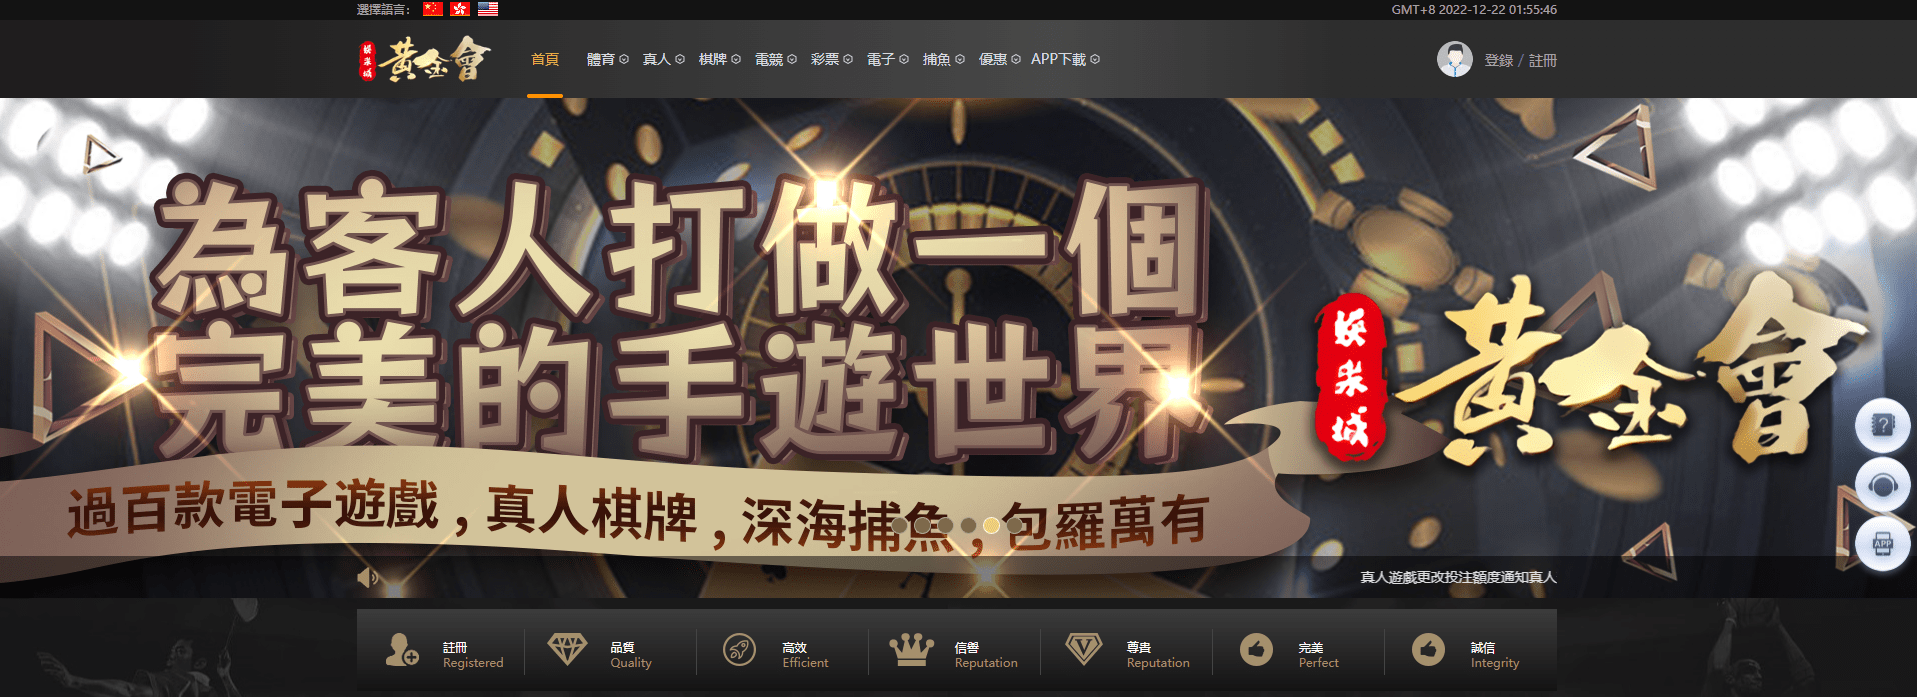 娛樂 城 推薦-香港 網上 賭場-網上 賭場 遊戲-在 線 賭場 網站-網上 賭博 網站